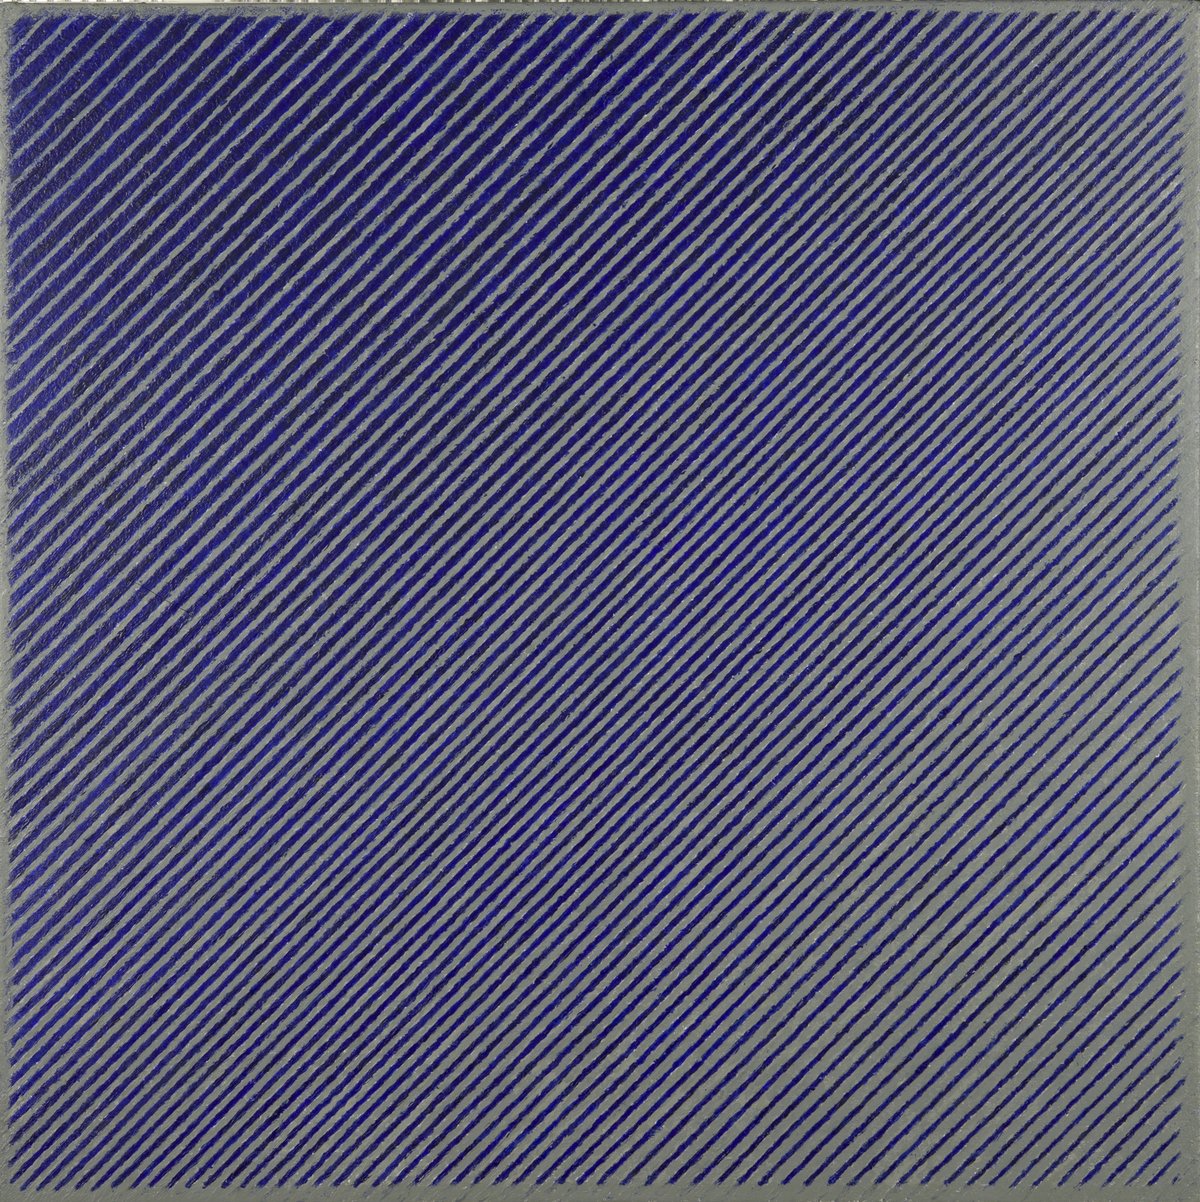 Abstract werk met schuine strepen op een paars/grijze achtergrond